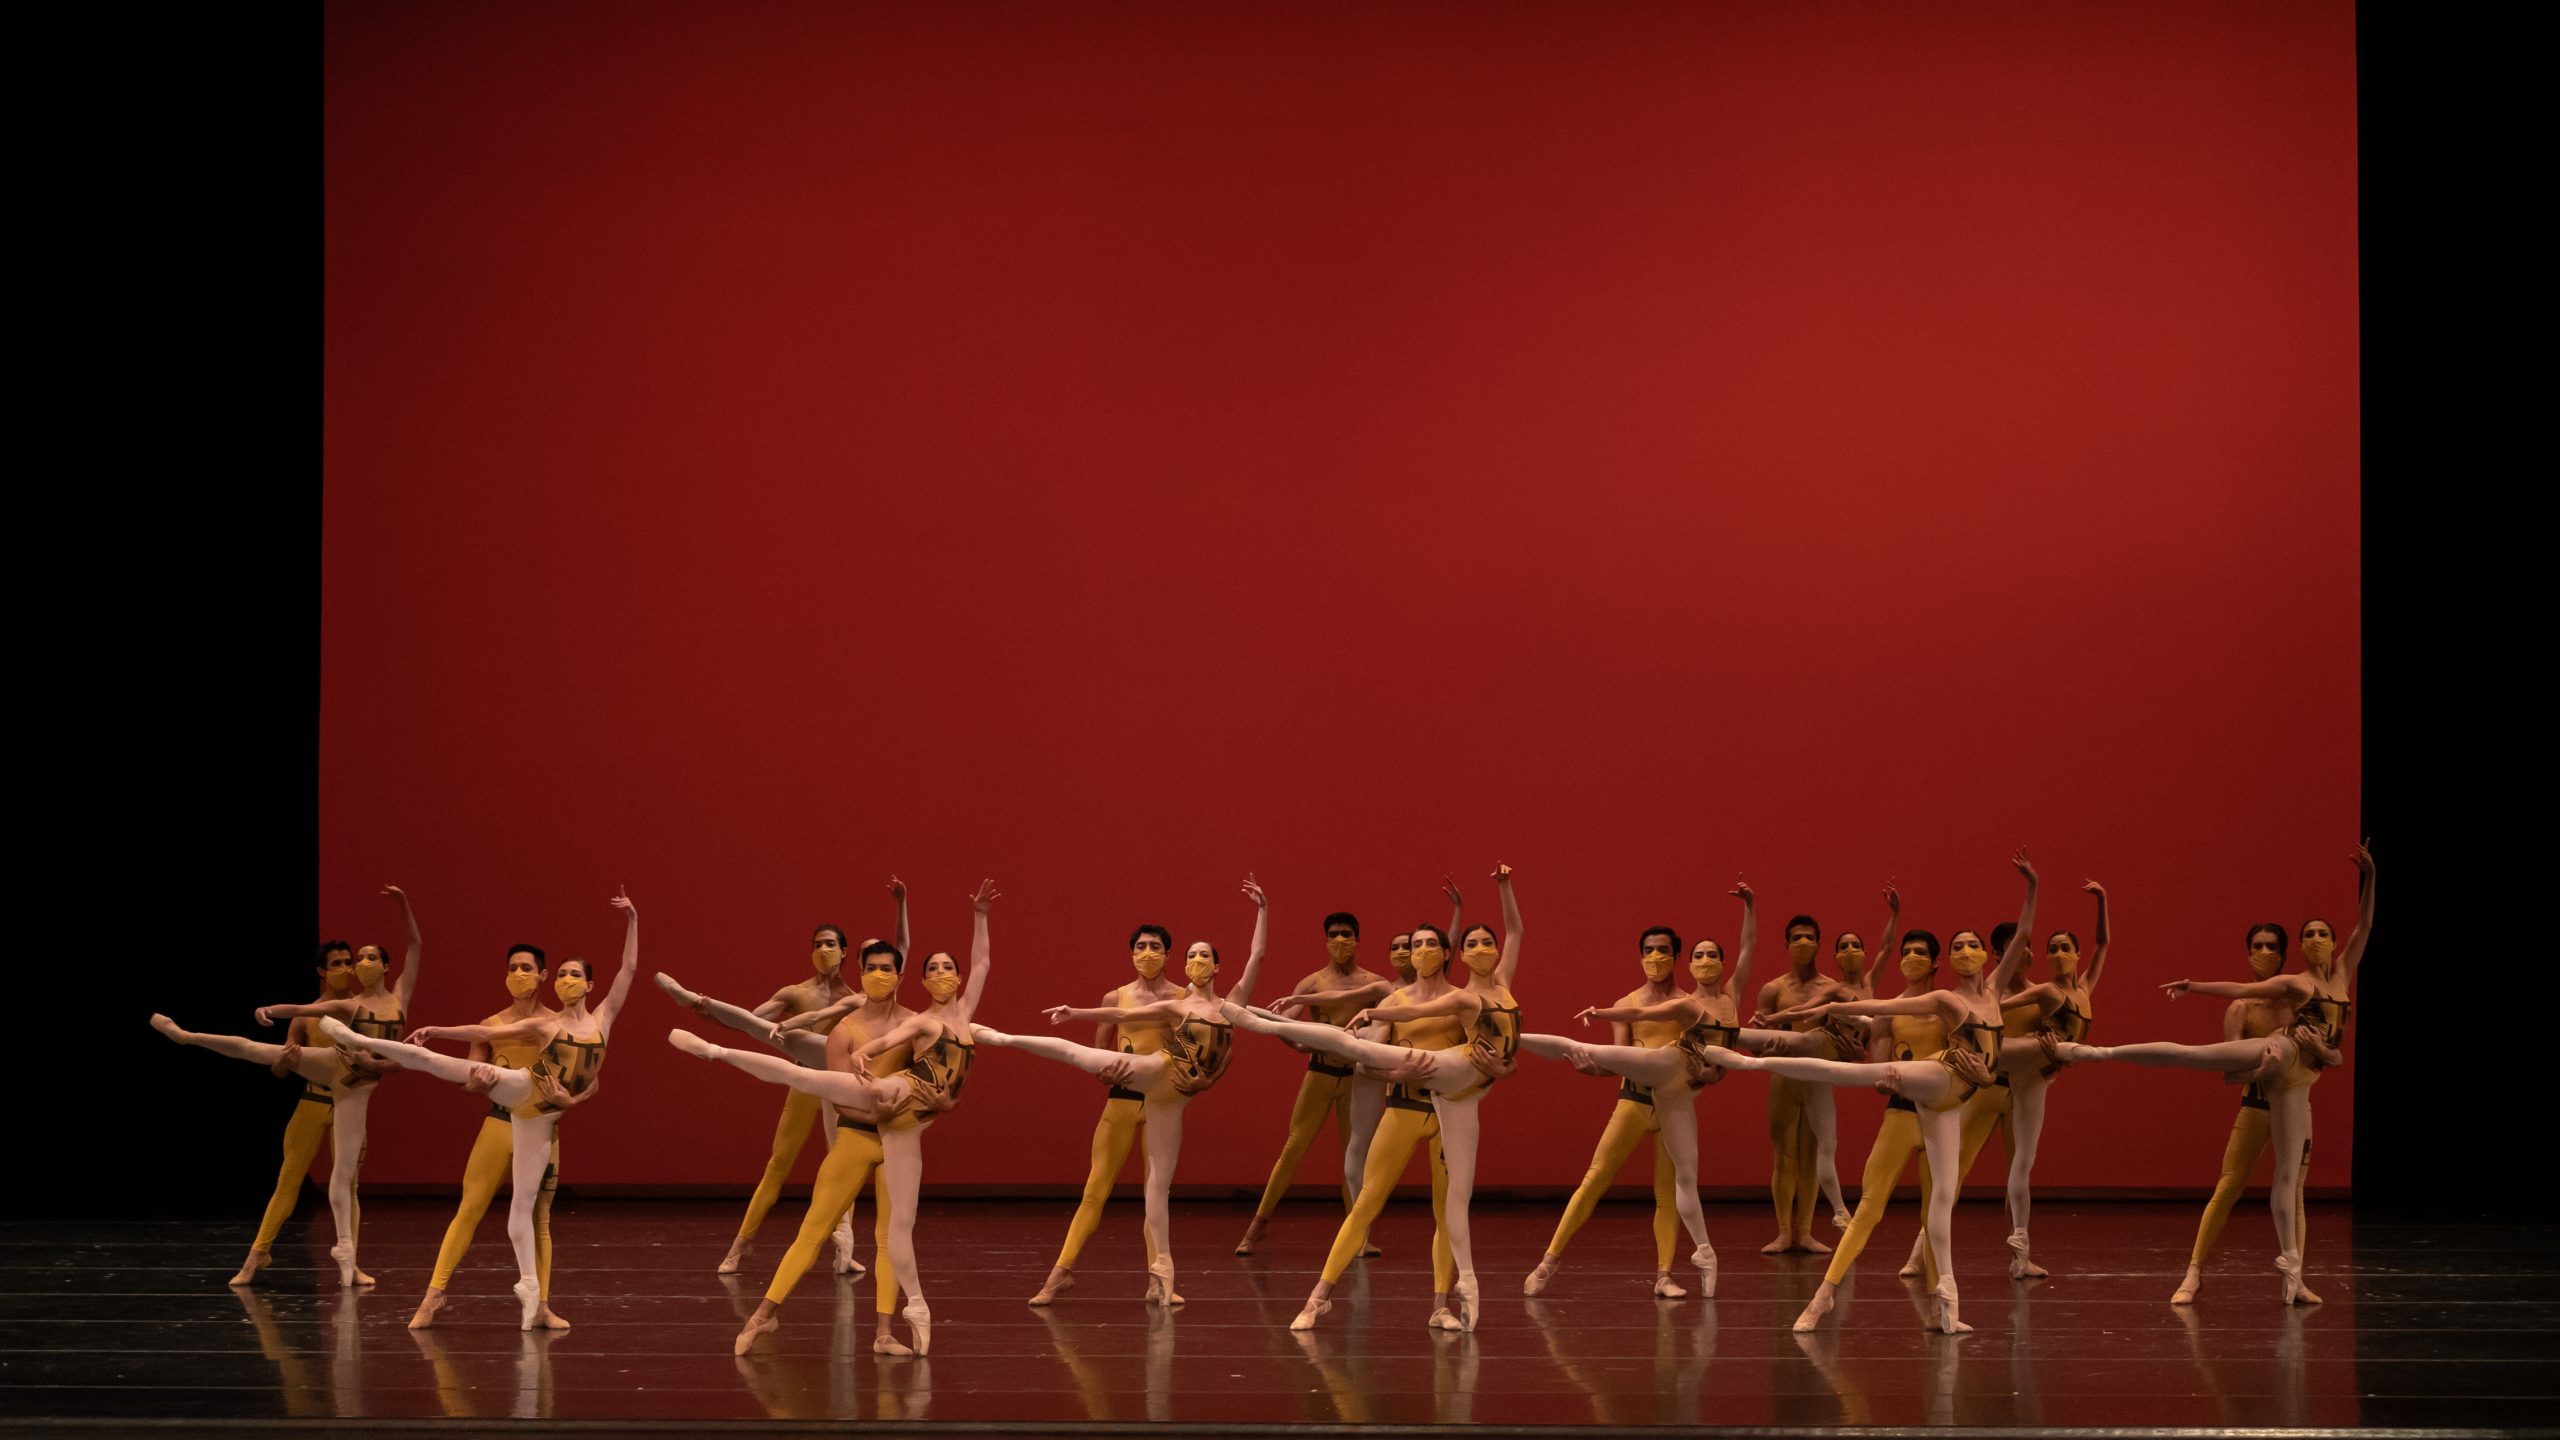 La Compañía Nacional de Danza participará en el Festival de Ludwigshafen con “Gala de ballet”